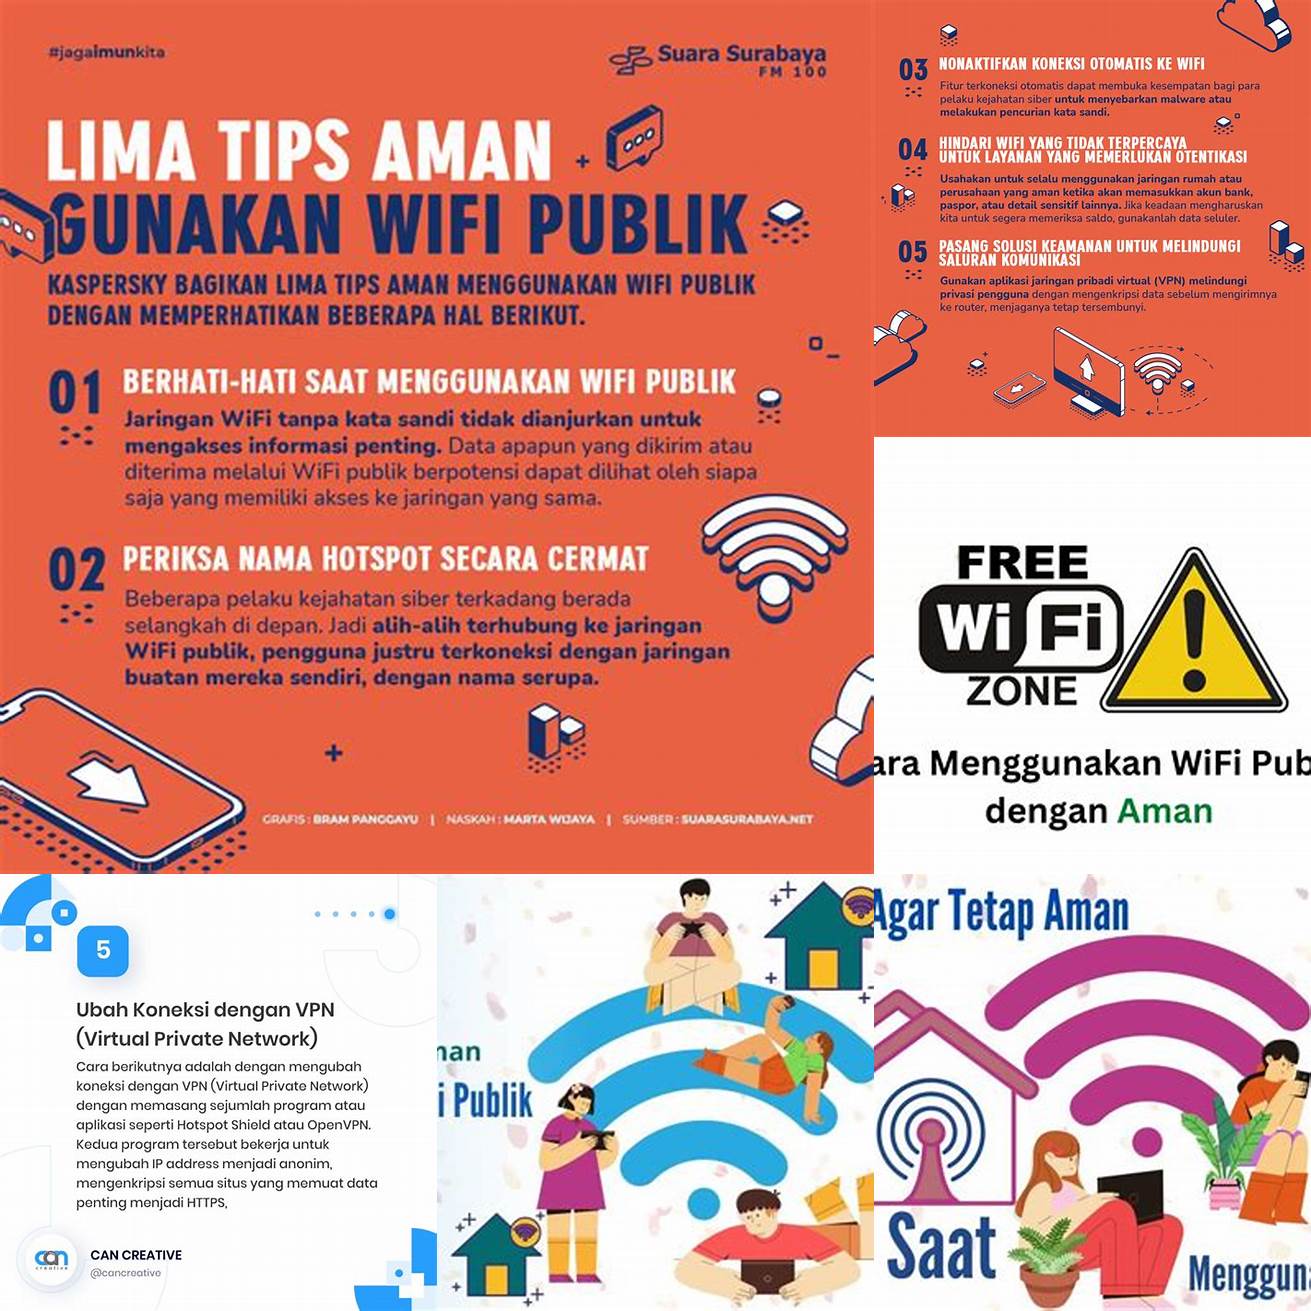 Jangan menggunakan BNI Mobile pada jaringan Wi-Fi publik atau tidak aman